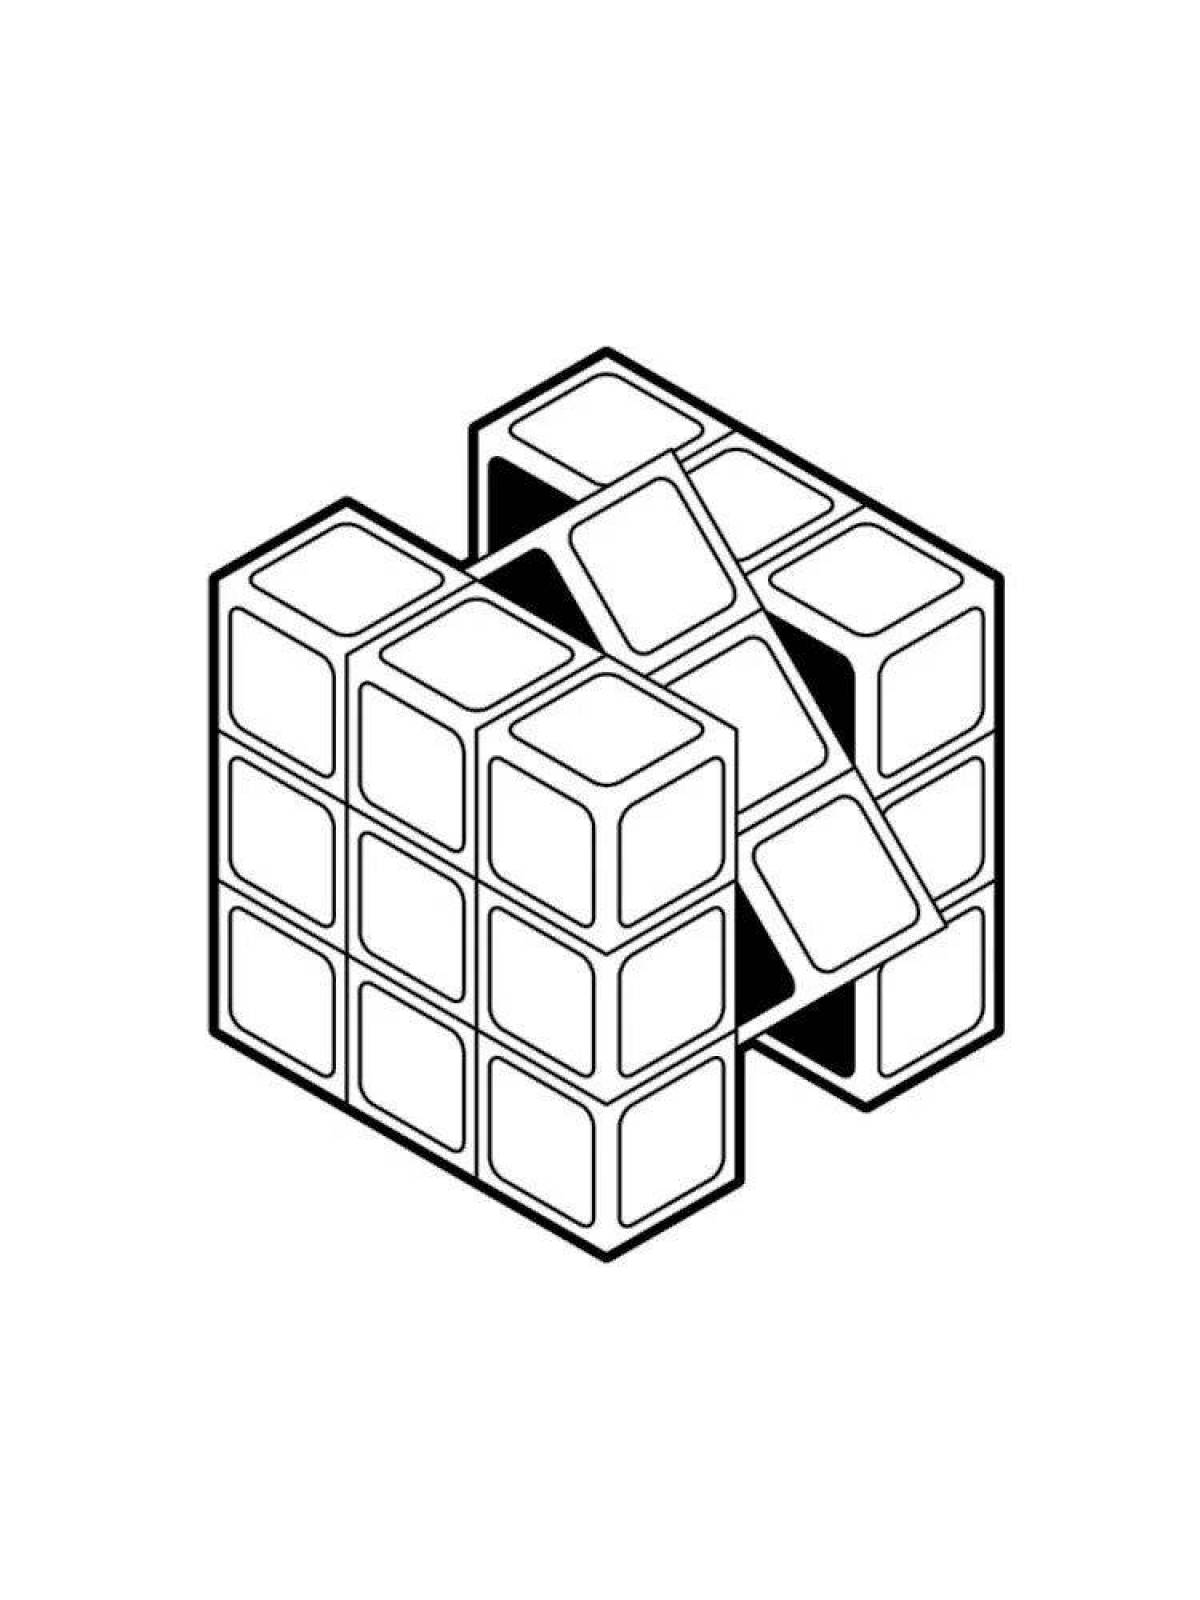 Подробная раскраска кубика рубика